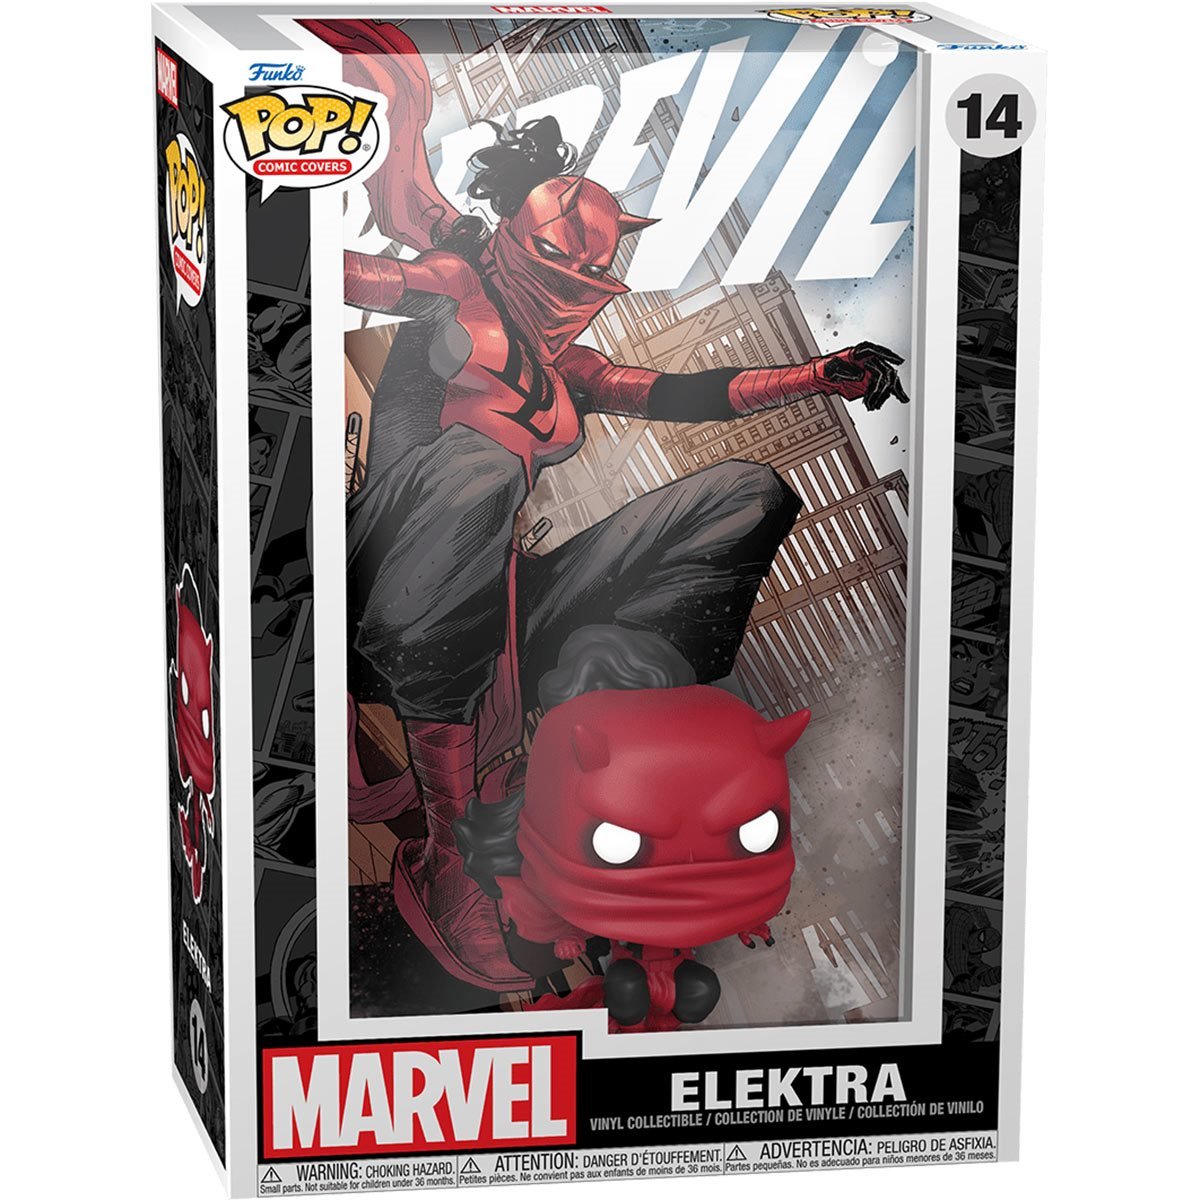 Daredevil Elektra Pop! Comic Cover